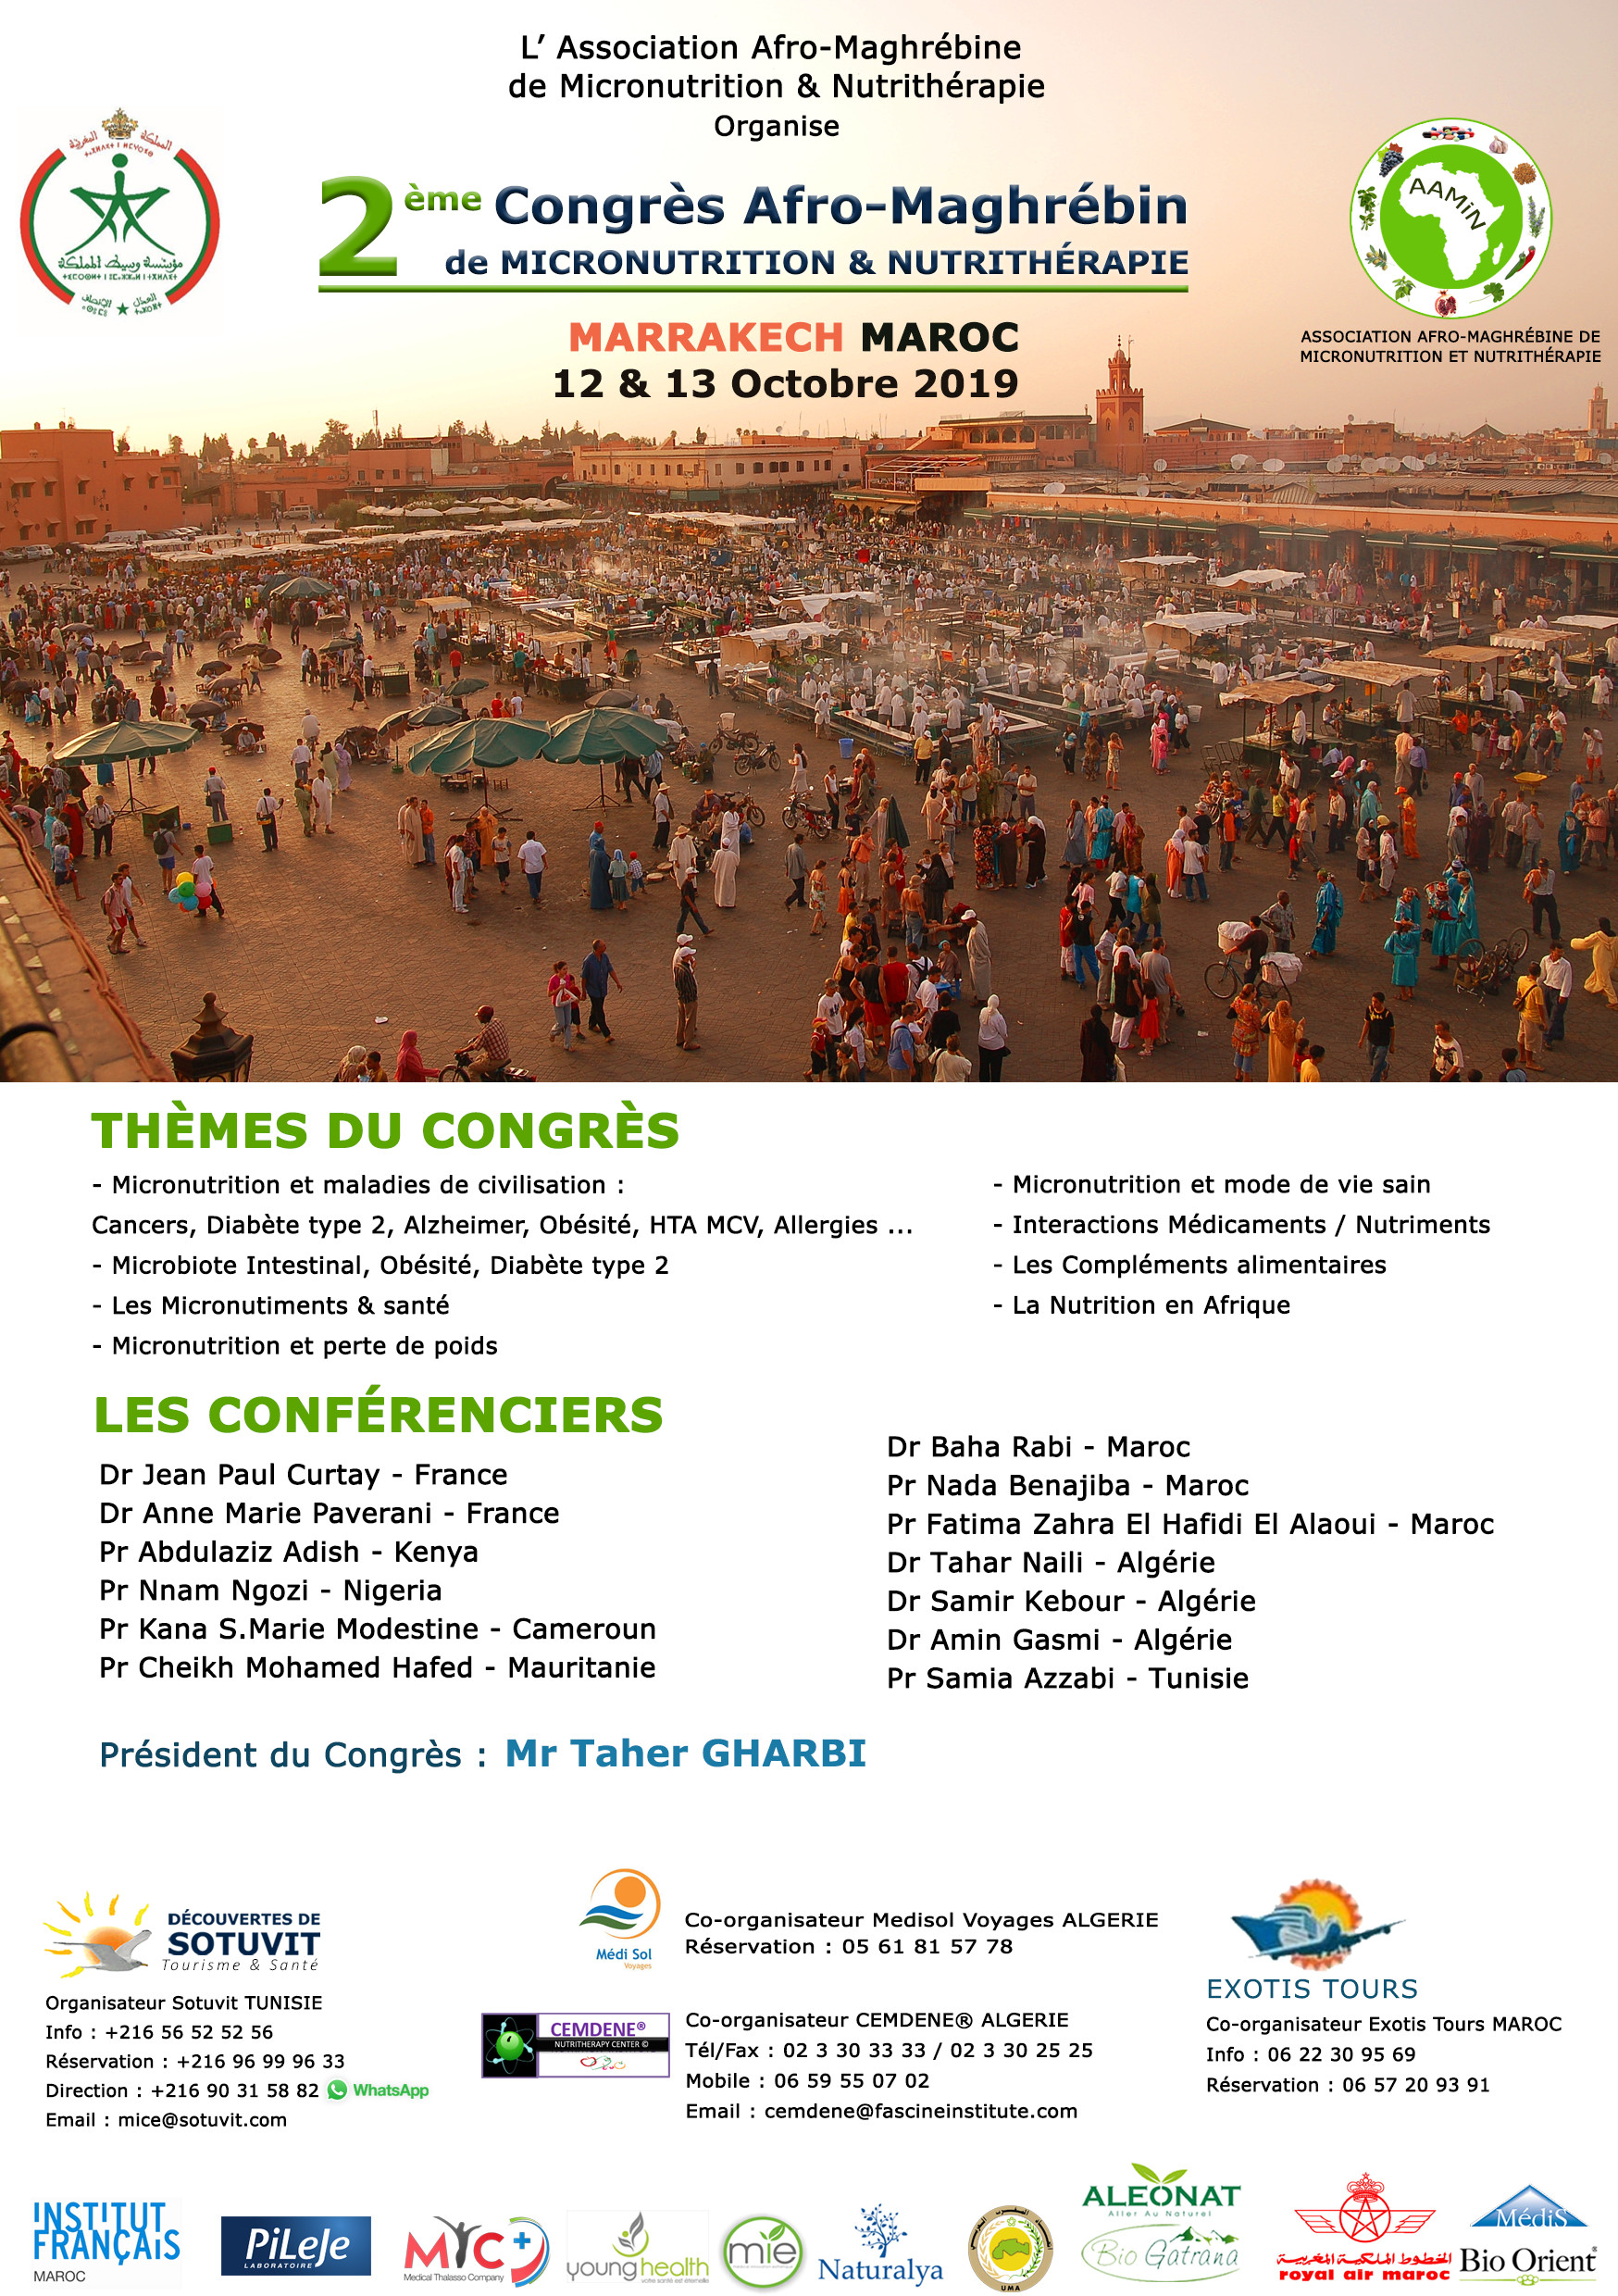 2ème Congrès Afro-Maghrébin Micronutrition et Nutrithérapie